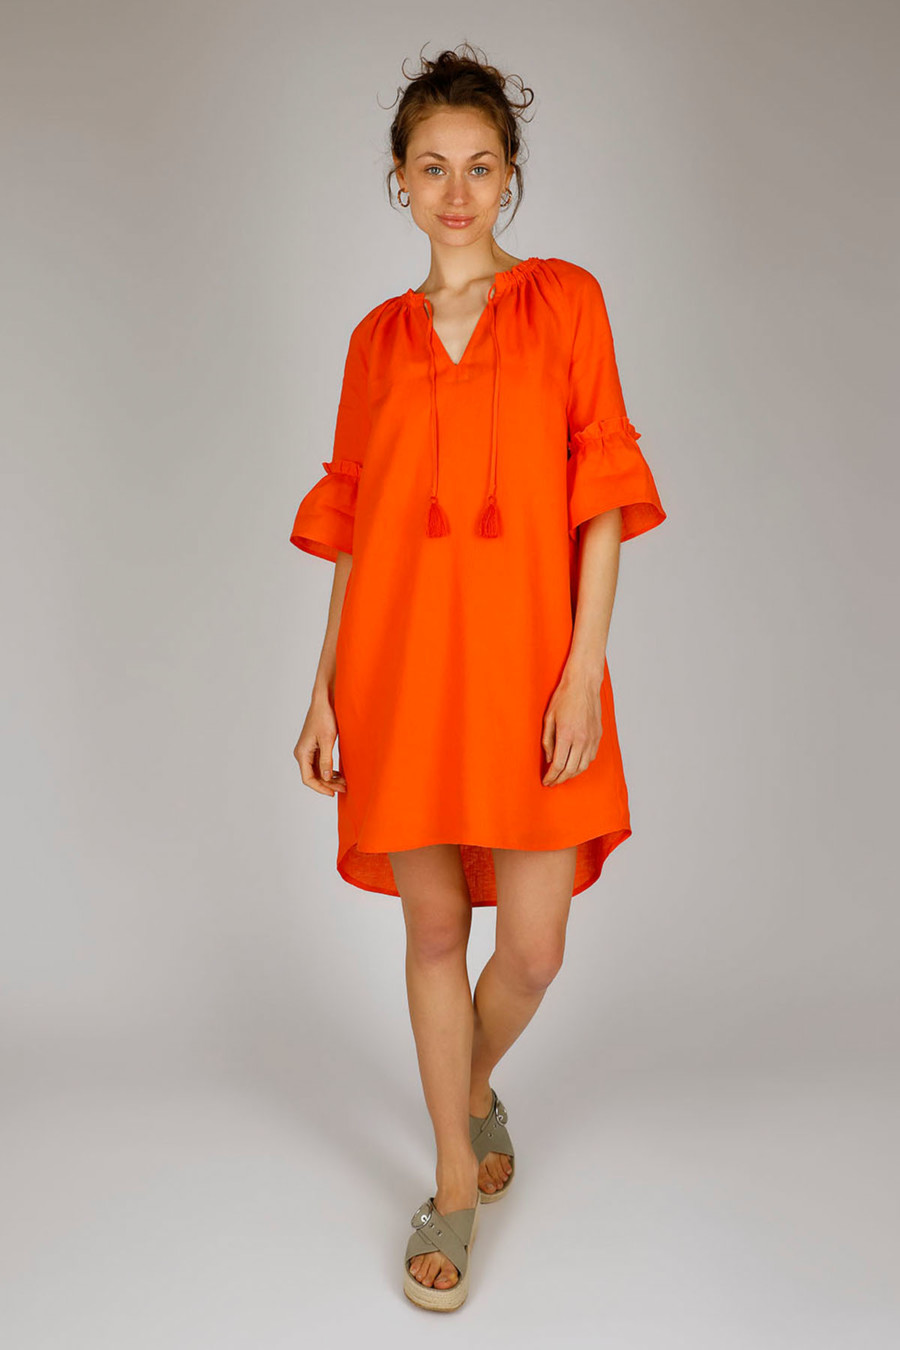 DIARY - Linen dress with Mediterranean flair - Colour: Tomato